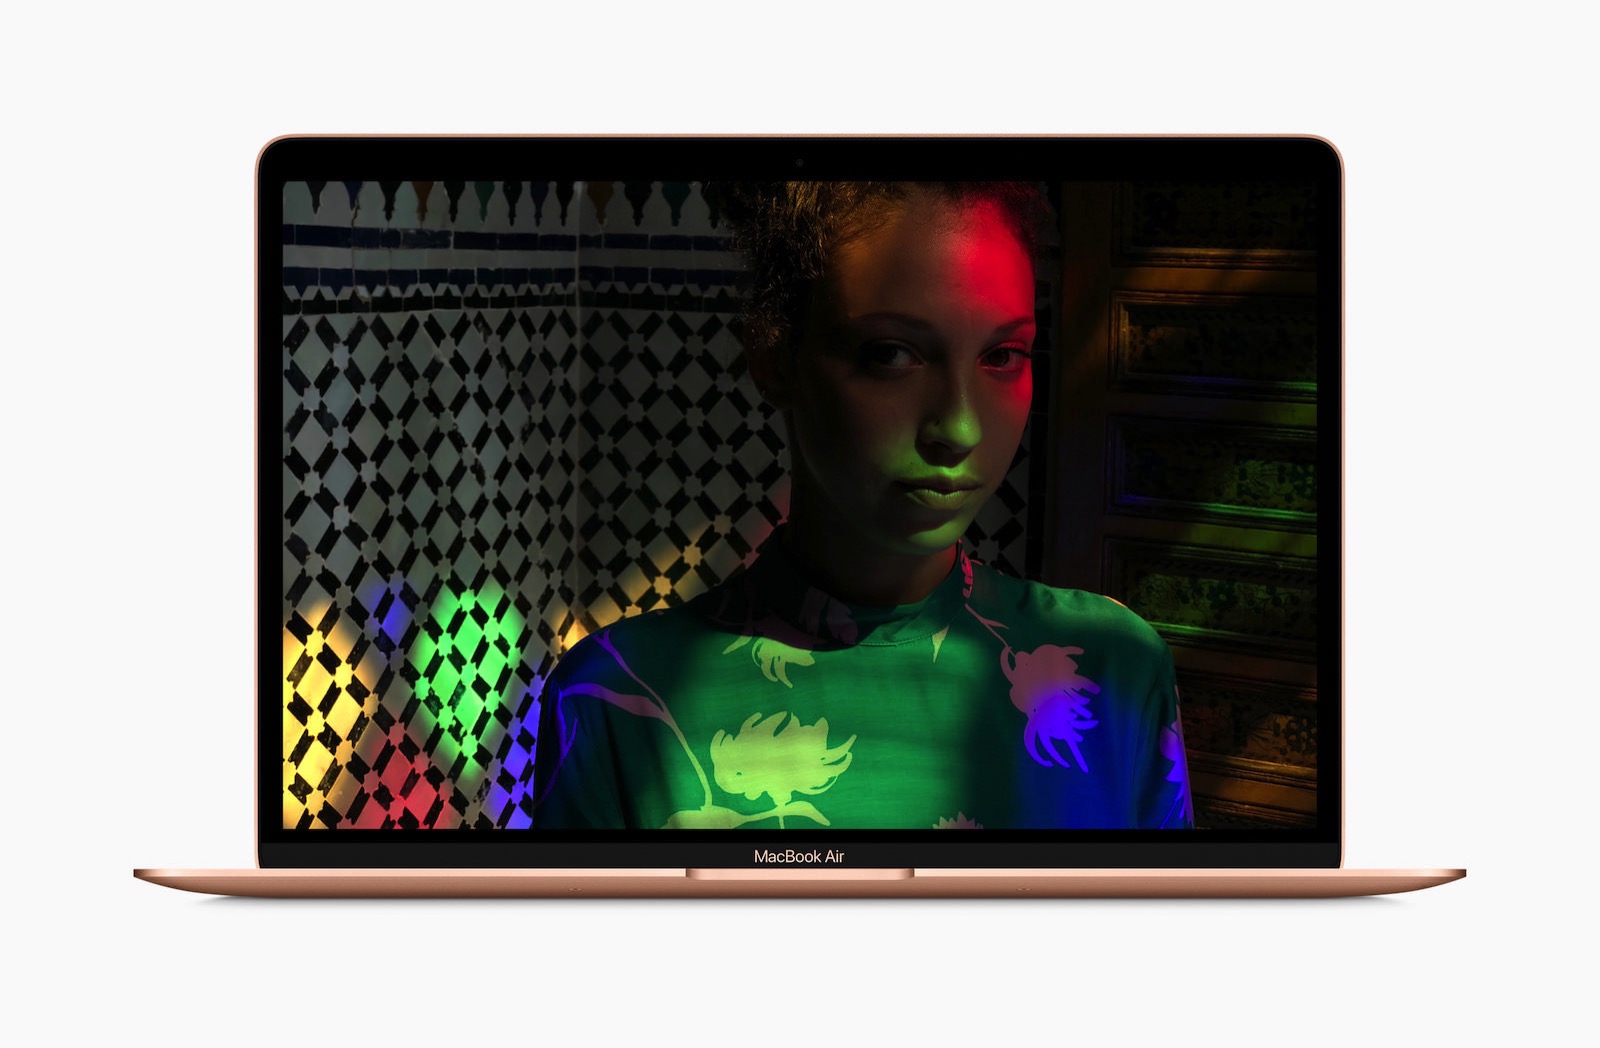 MacBook-Air-Retina-Display-10302018.jpg